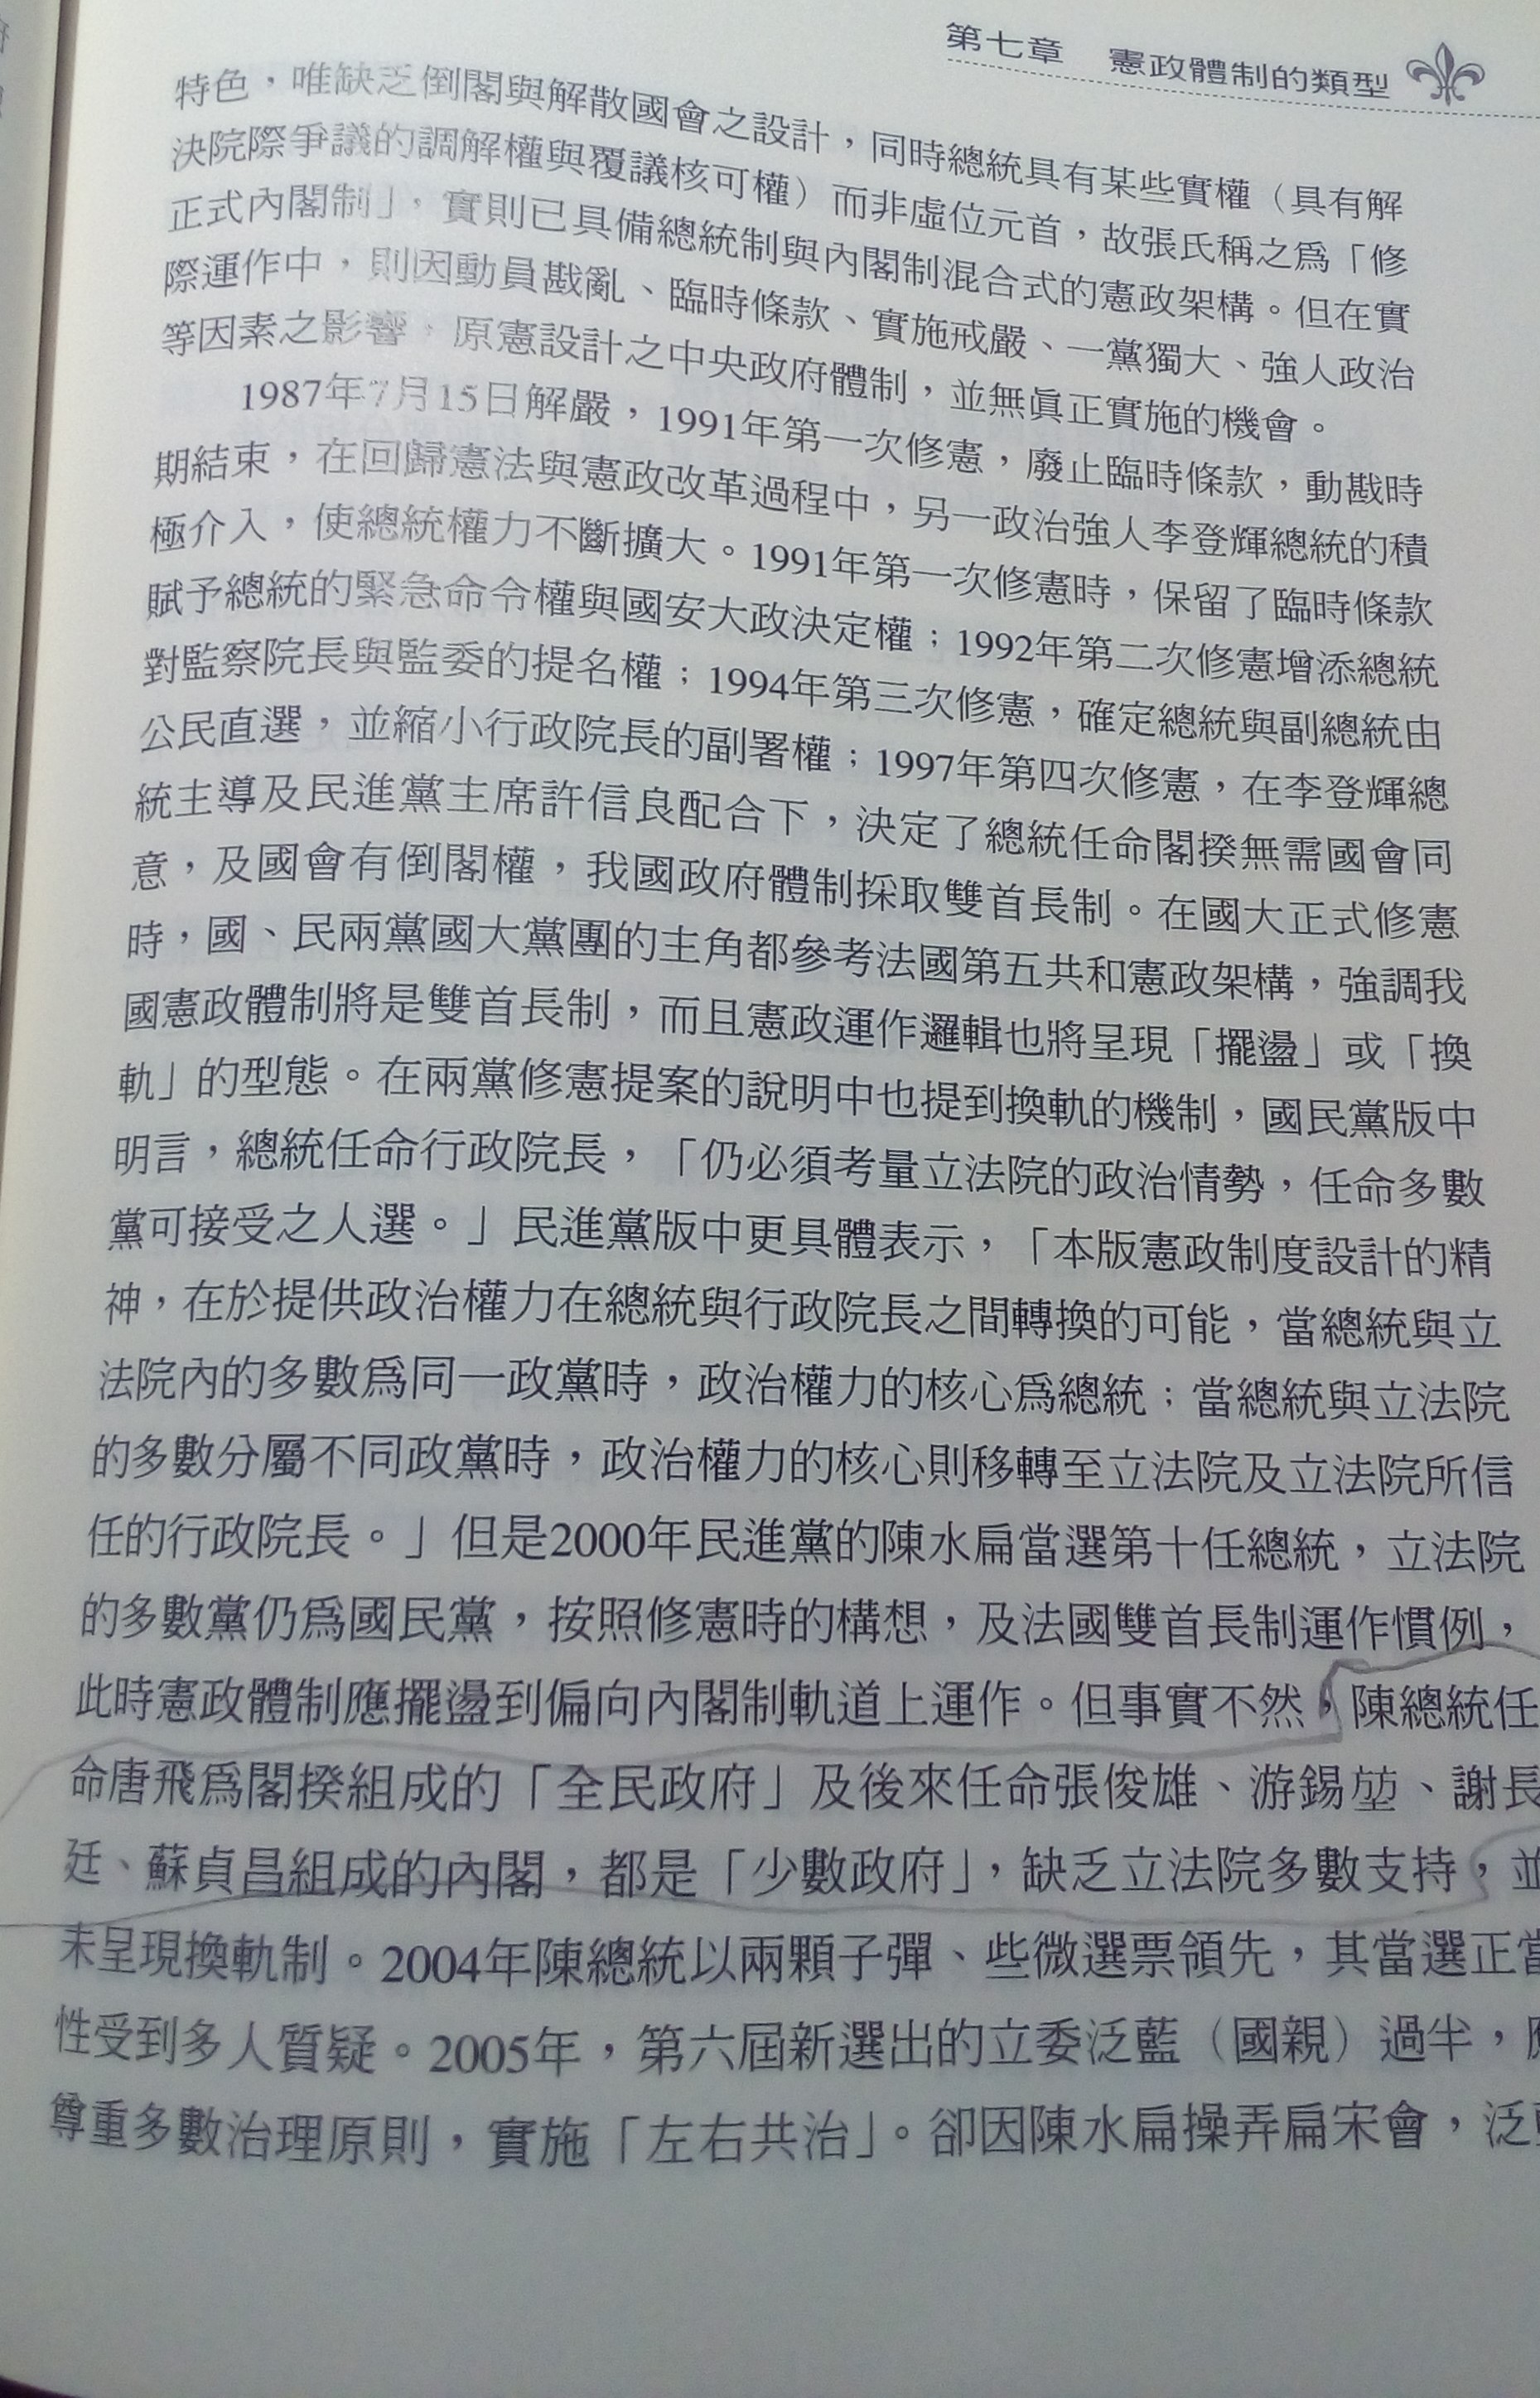 [問題] 陳義彥的政治學一書中對於雙首長制的邏輯